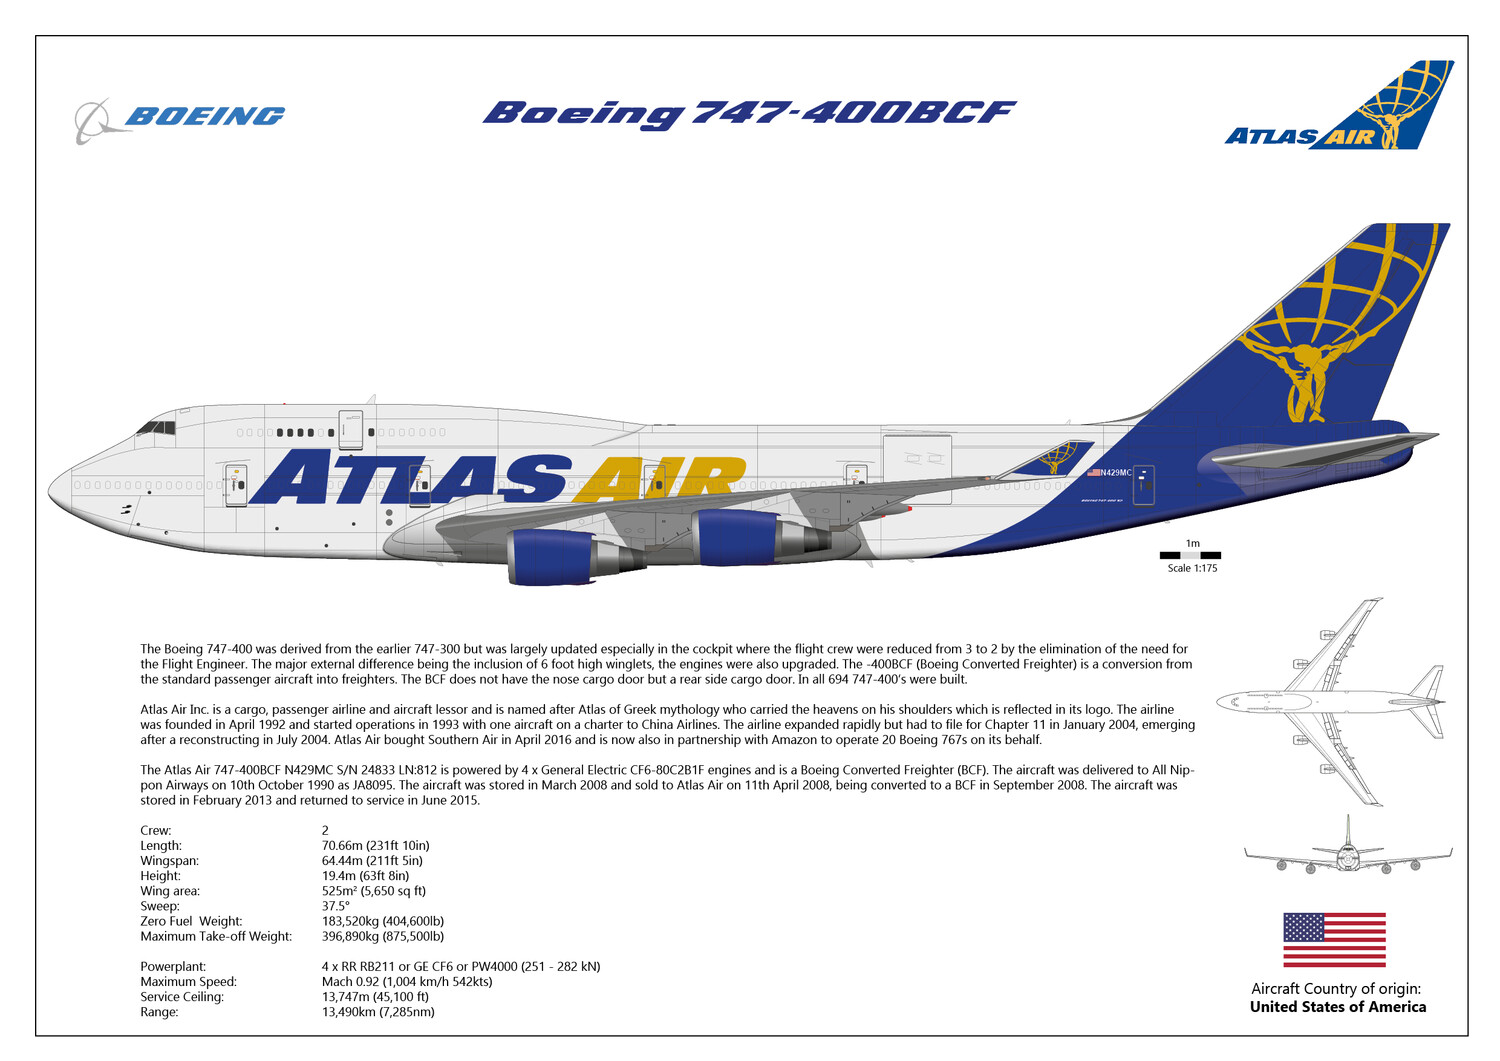 Boeing 747-400BCF of Atlas Air